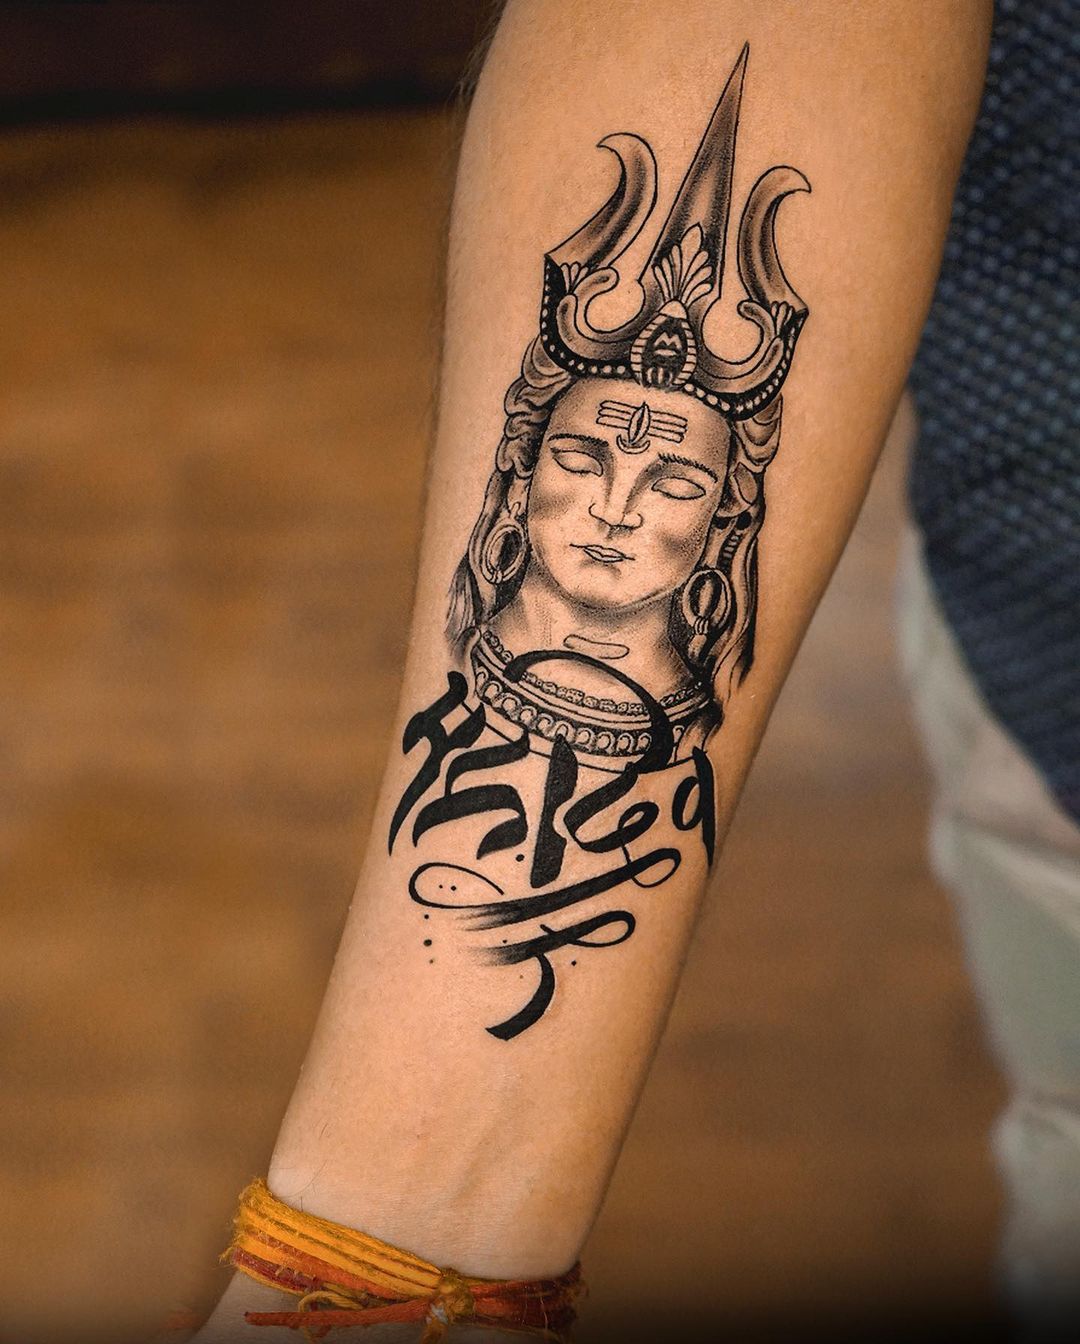 Trishula tattoo design  Shiva tattoo design Trishul tattoo designs Hand  tattoos for guys